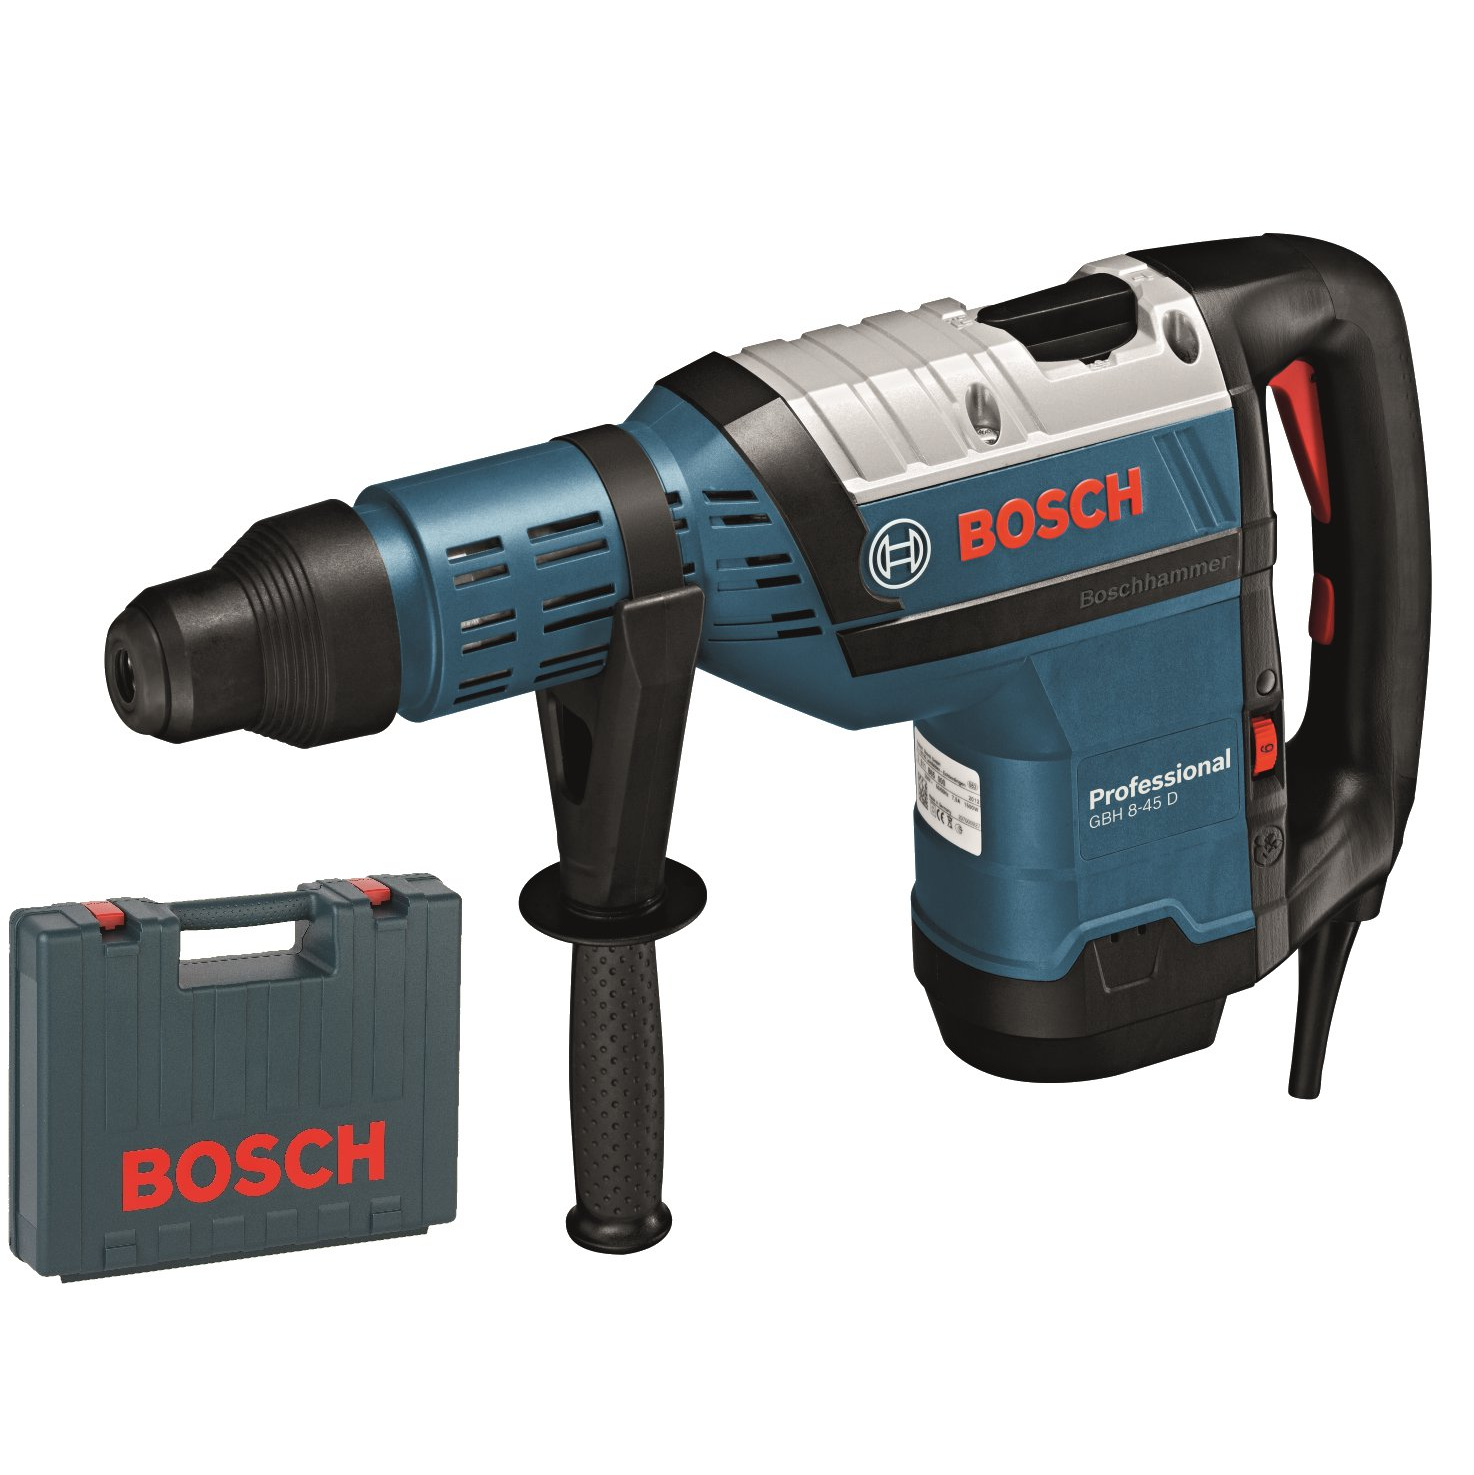 Bosch GBH 8-45 D Rotary Hammer